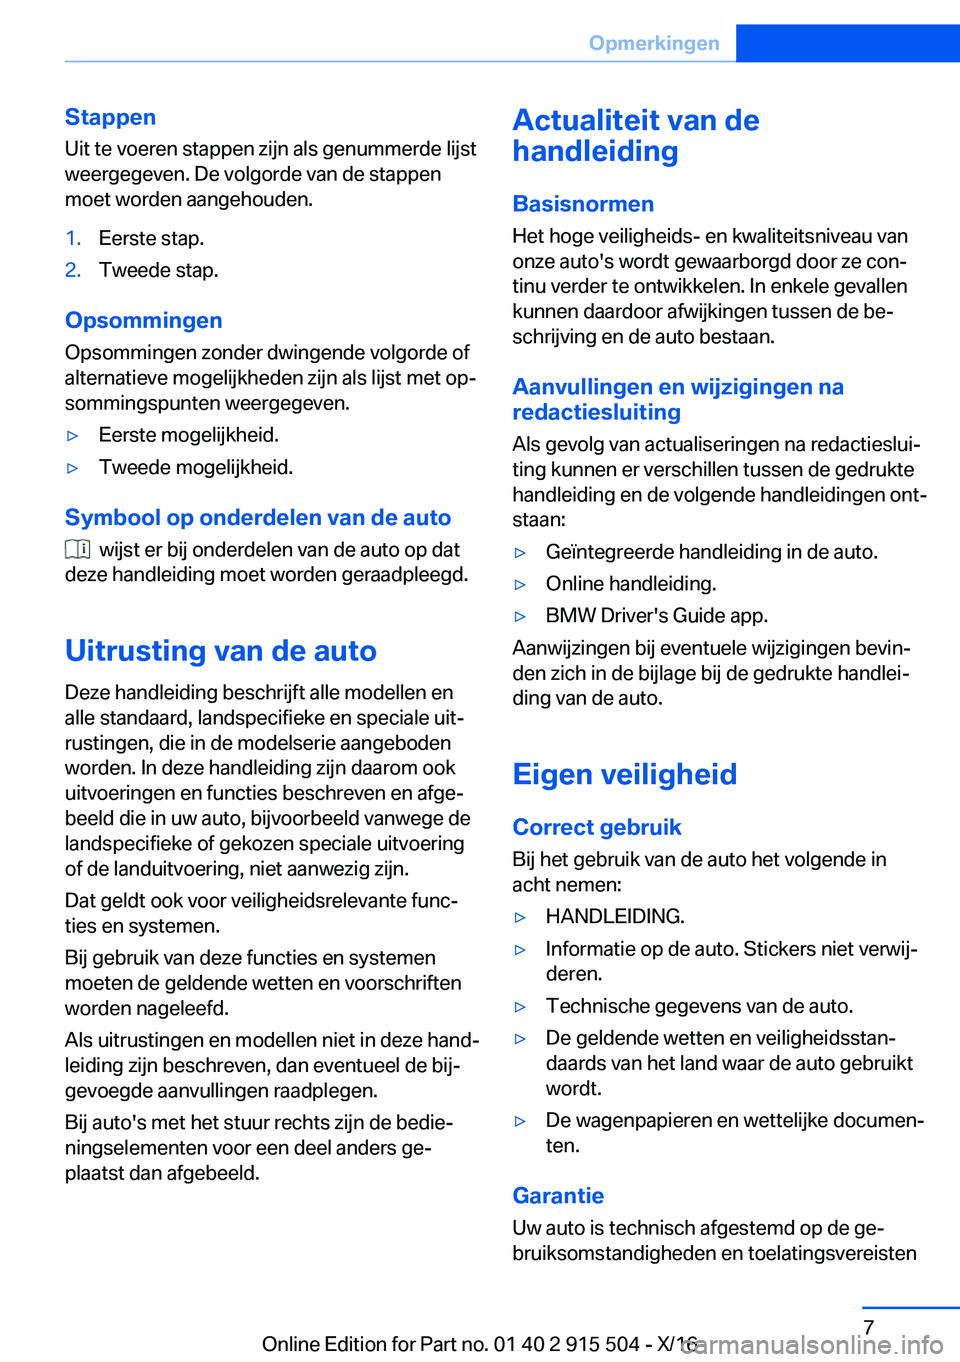 BMW X5 2017  Instructieboekjes (in Dutch) �S�t�a�p�p�e�n
�U�i�t� �t�e� �v�o�e�r�e�n� �s�t�a�p�p�e�n� �z�i�j�n� �a�l�s� �g�e�n�u�m�m�e�r�d�e� �l�i�j�s�t �w�e�e�r�g�e�g�e�v�e�n�.� �D�e� �v�o�l�g�o�r�d�e� �v�a�n� �d�e� �s�t�a�p�p�e�n�m�o�e�t� �w